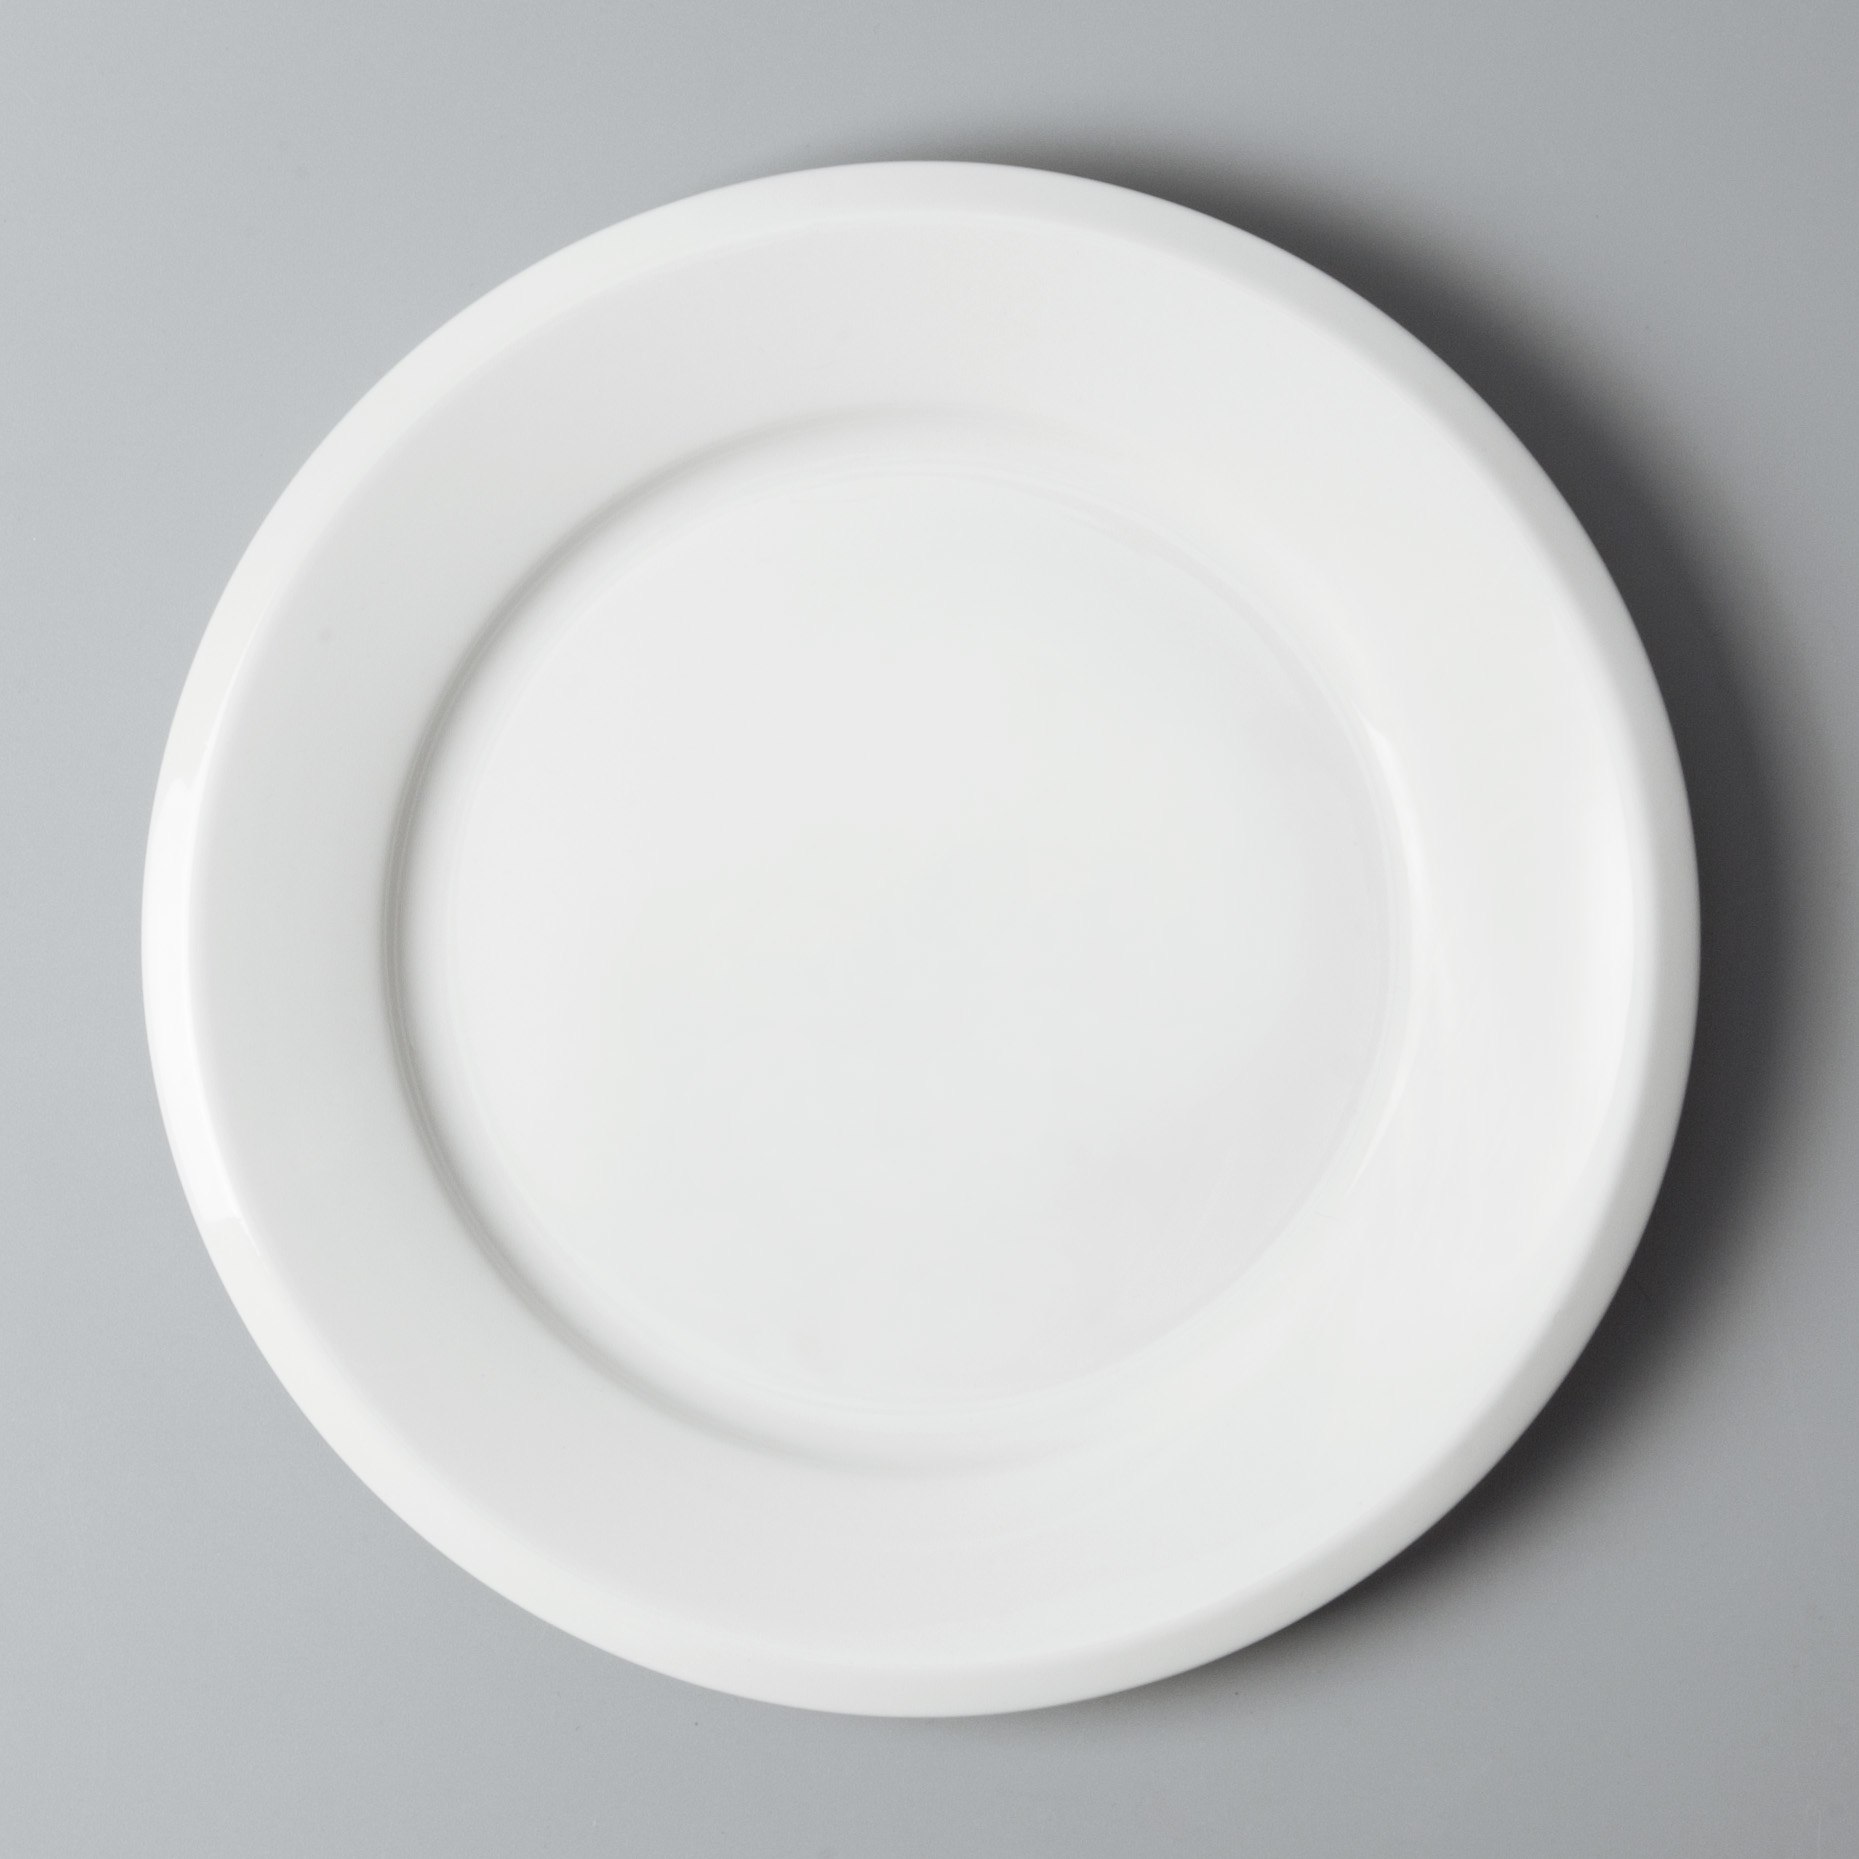 restaurant dinnerware sets sample for restaurant Two Eight-2